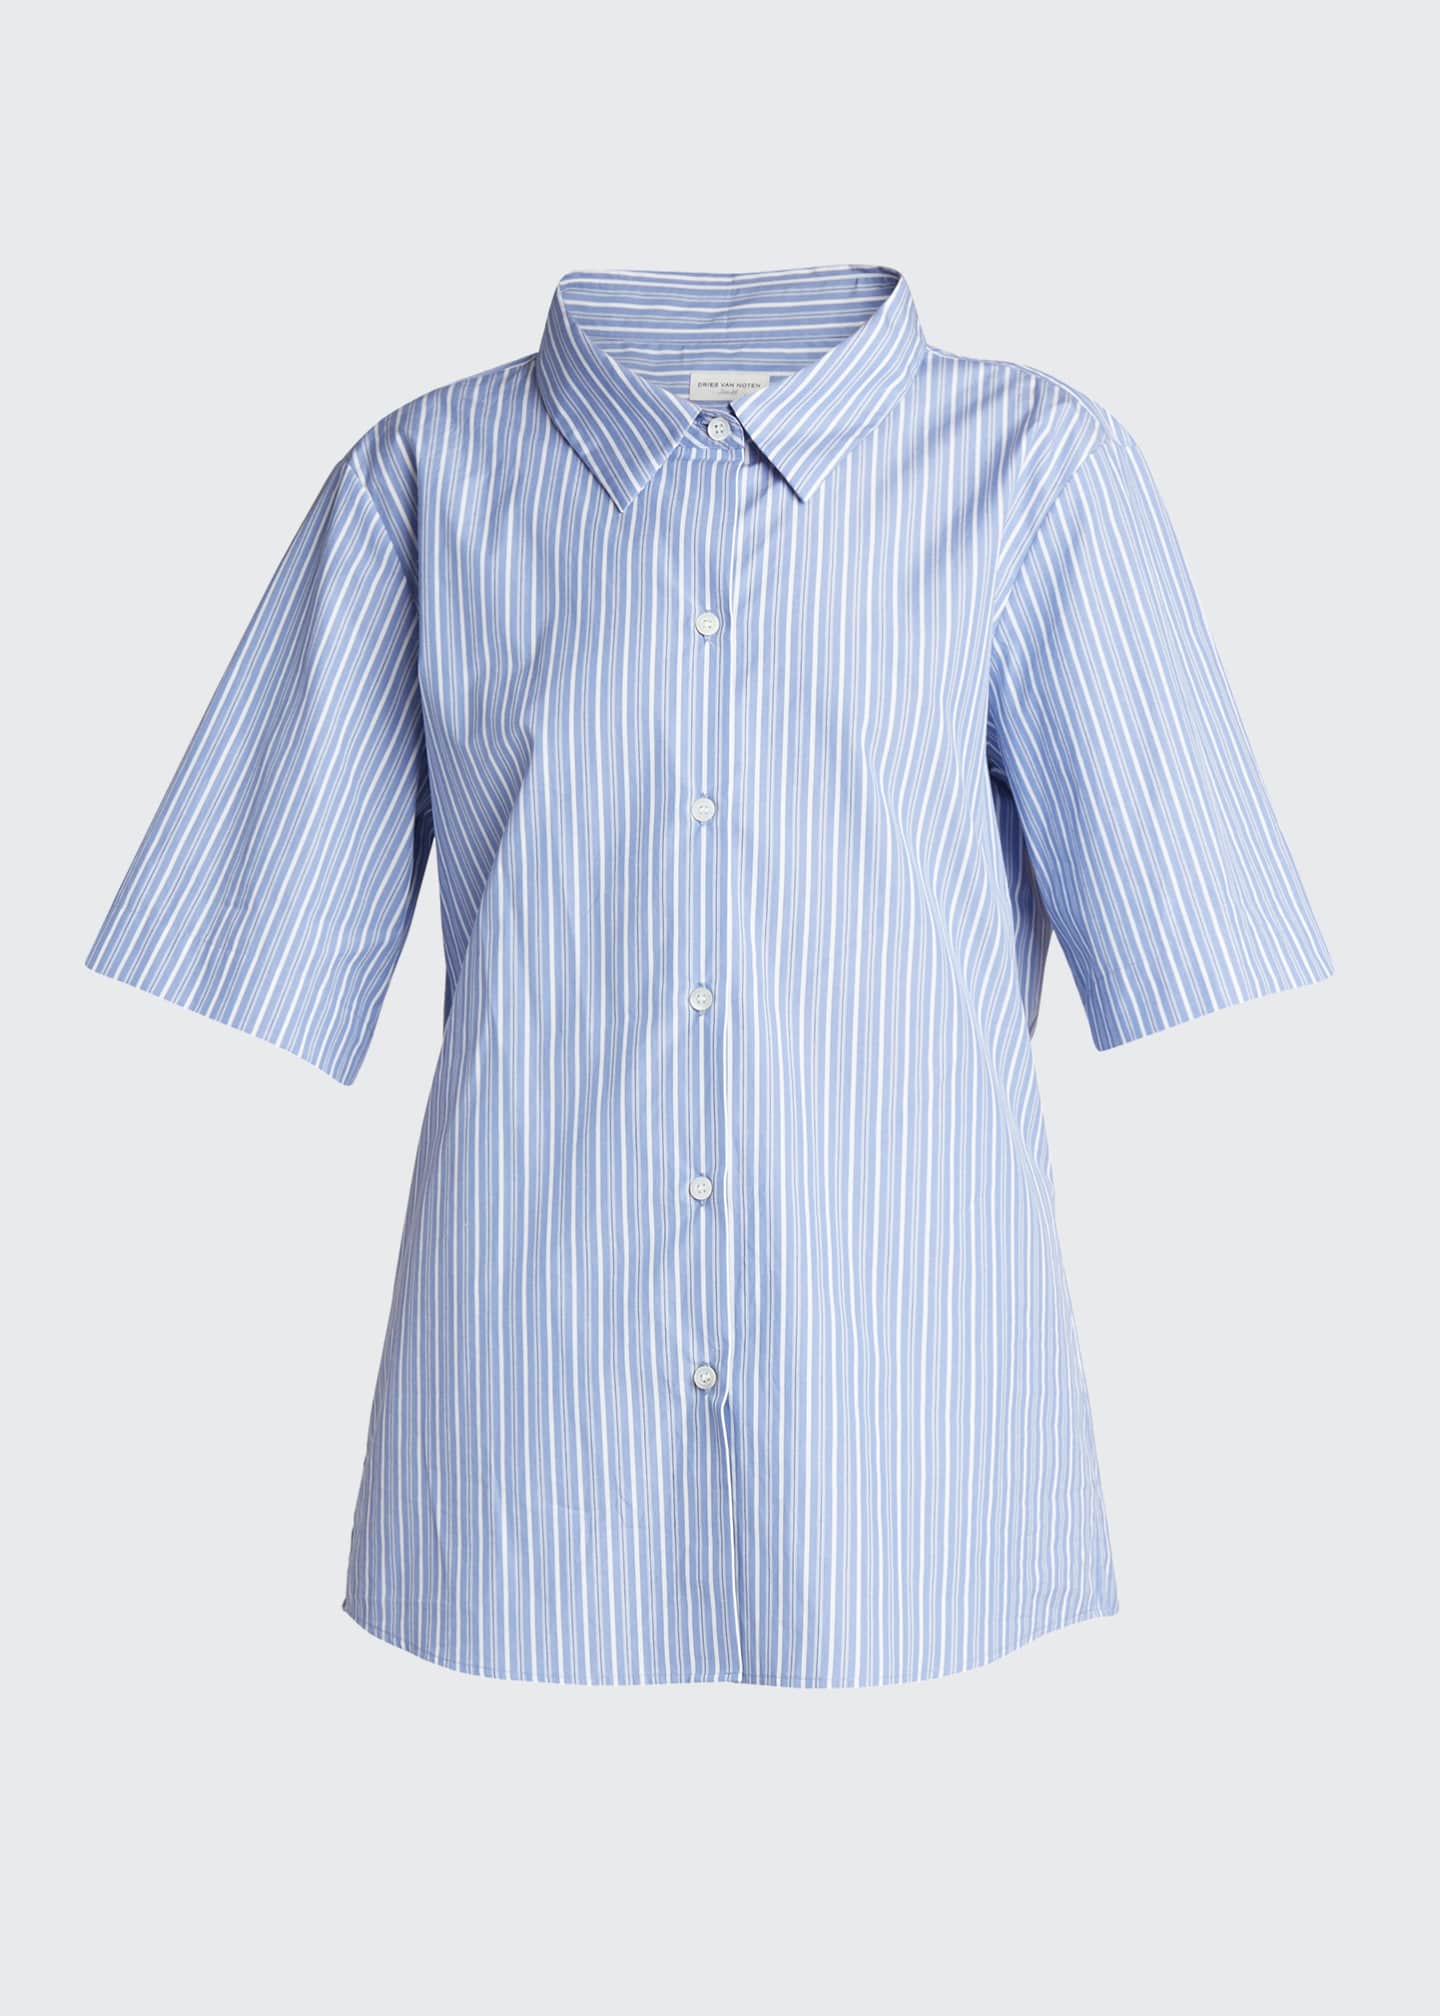 Dries Van Noten Striped Poplin Button-Down Shirt - Bergdorf Goodman